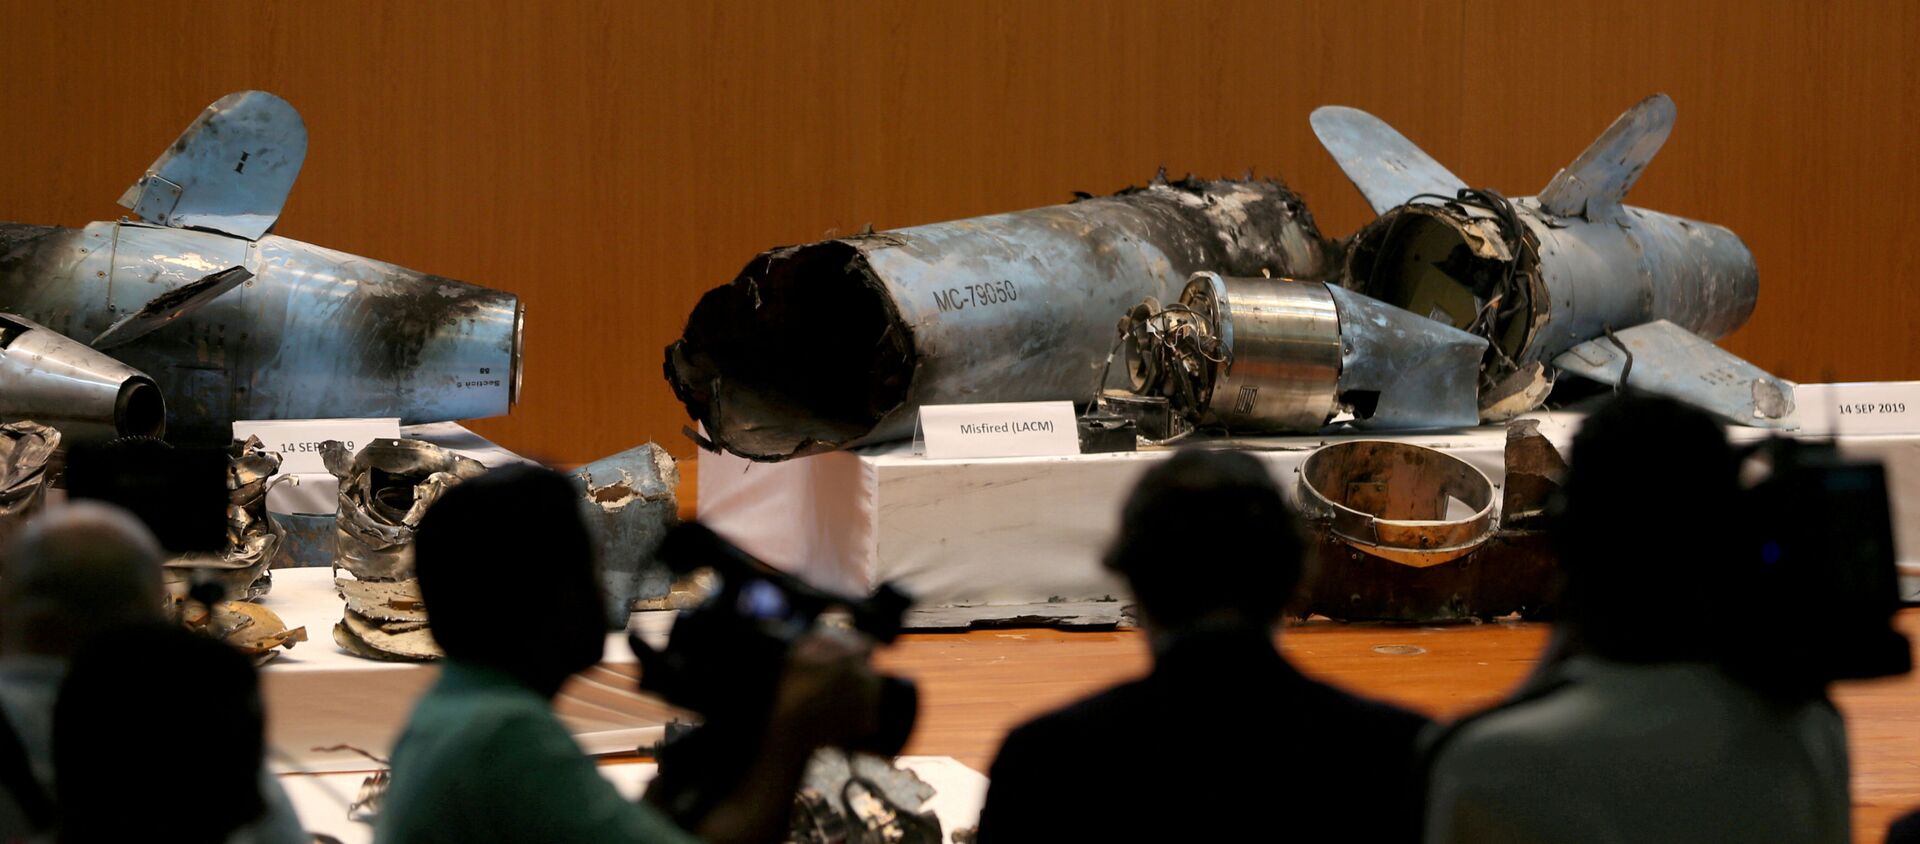 Destroços dos armamentos utilizados nos ataques à Saudi Aramco, de acordo com o governo saudita, em exposição em Riad - Sputnik Brasil, 1920, 11.12.2019